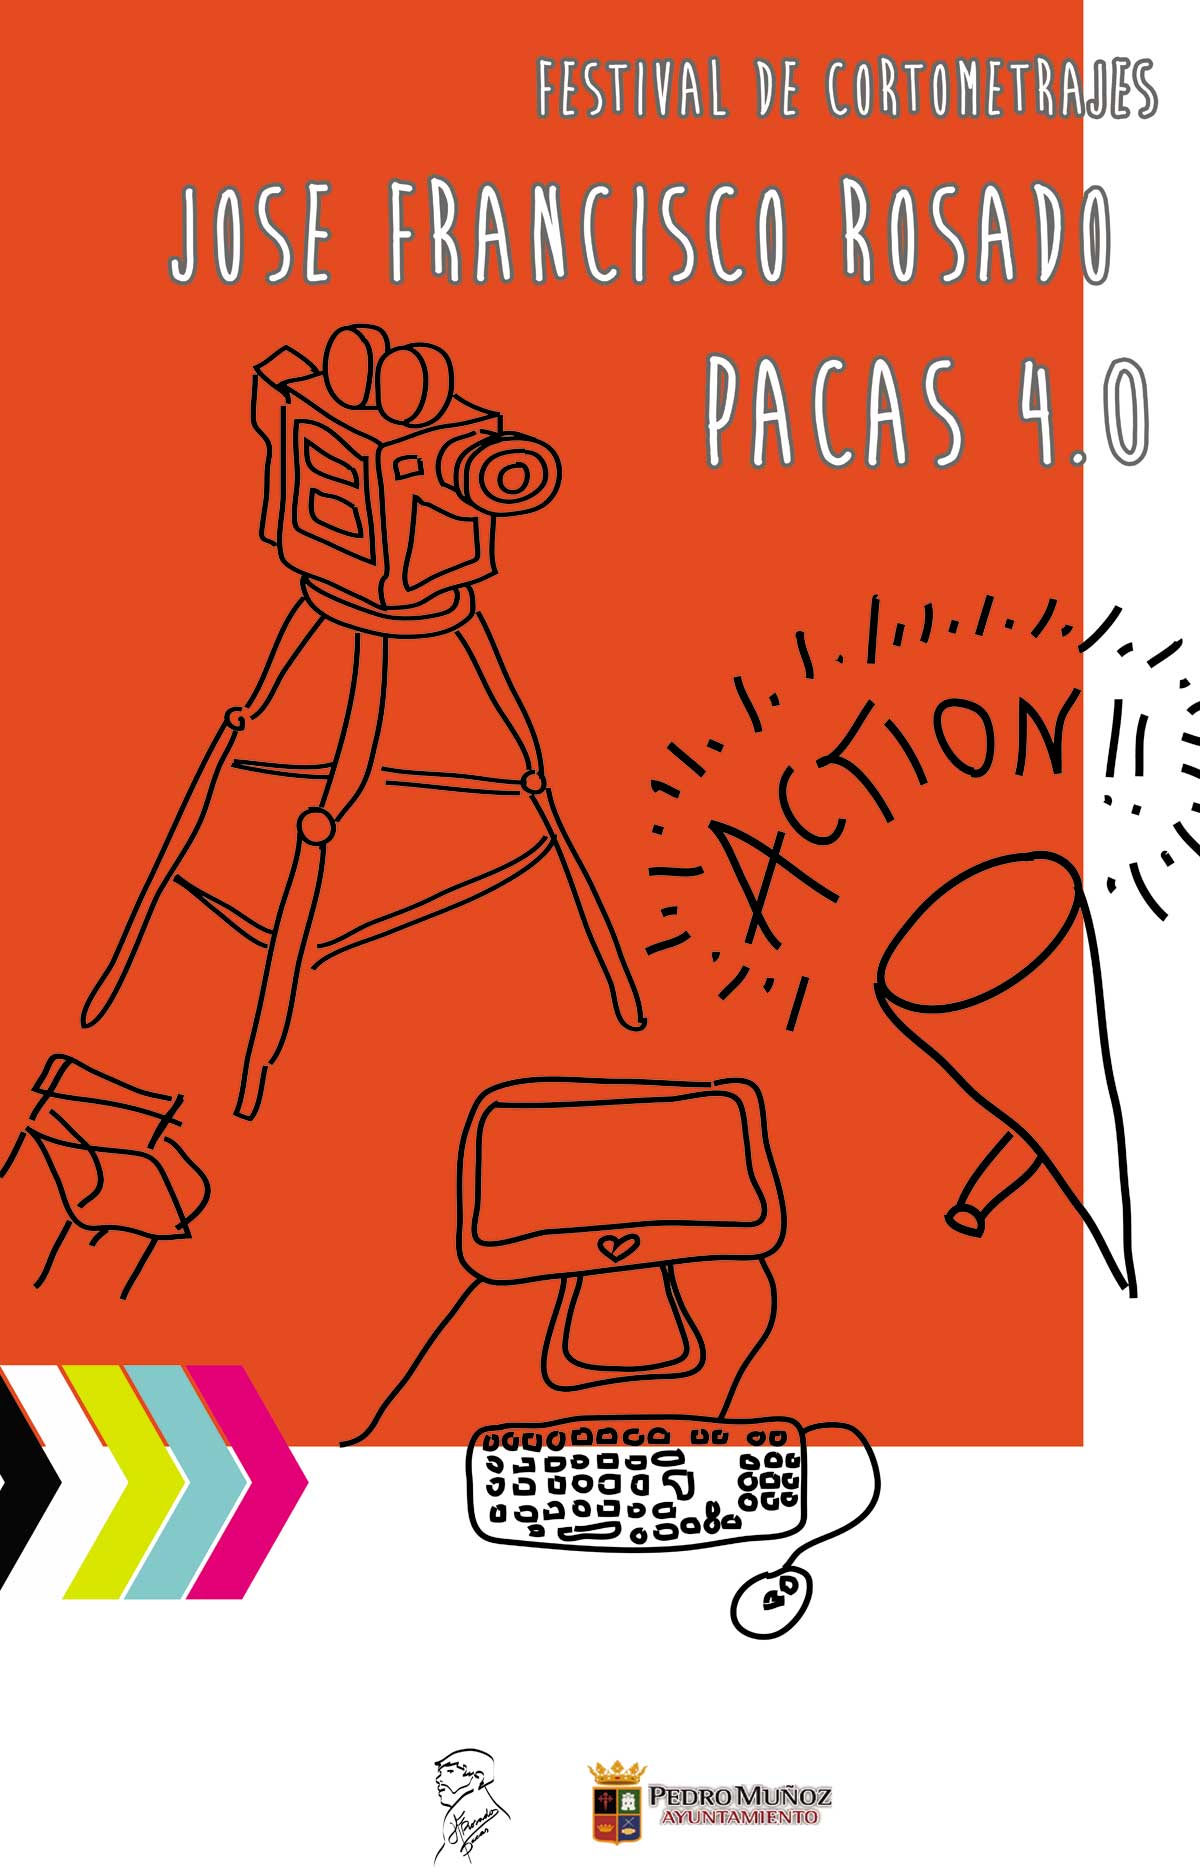 El Festival de Cortometrajes “José Francisco Rosado, PACAS 4.0.” celebra su cuarta edición